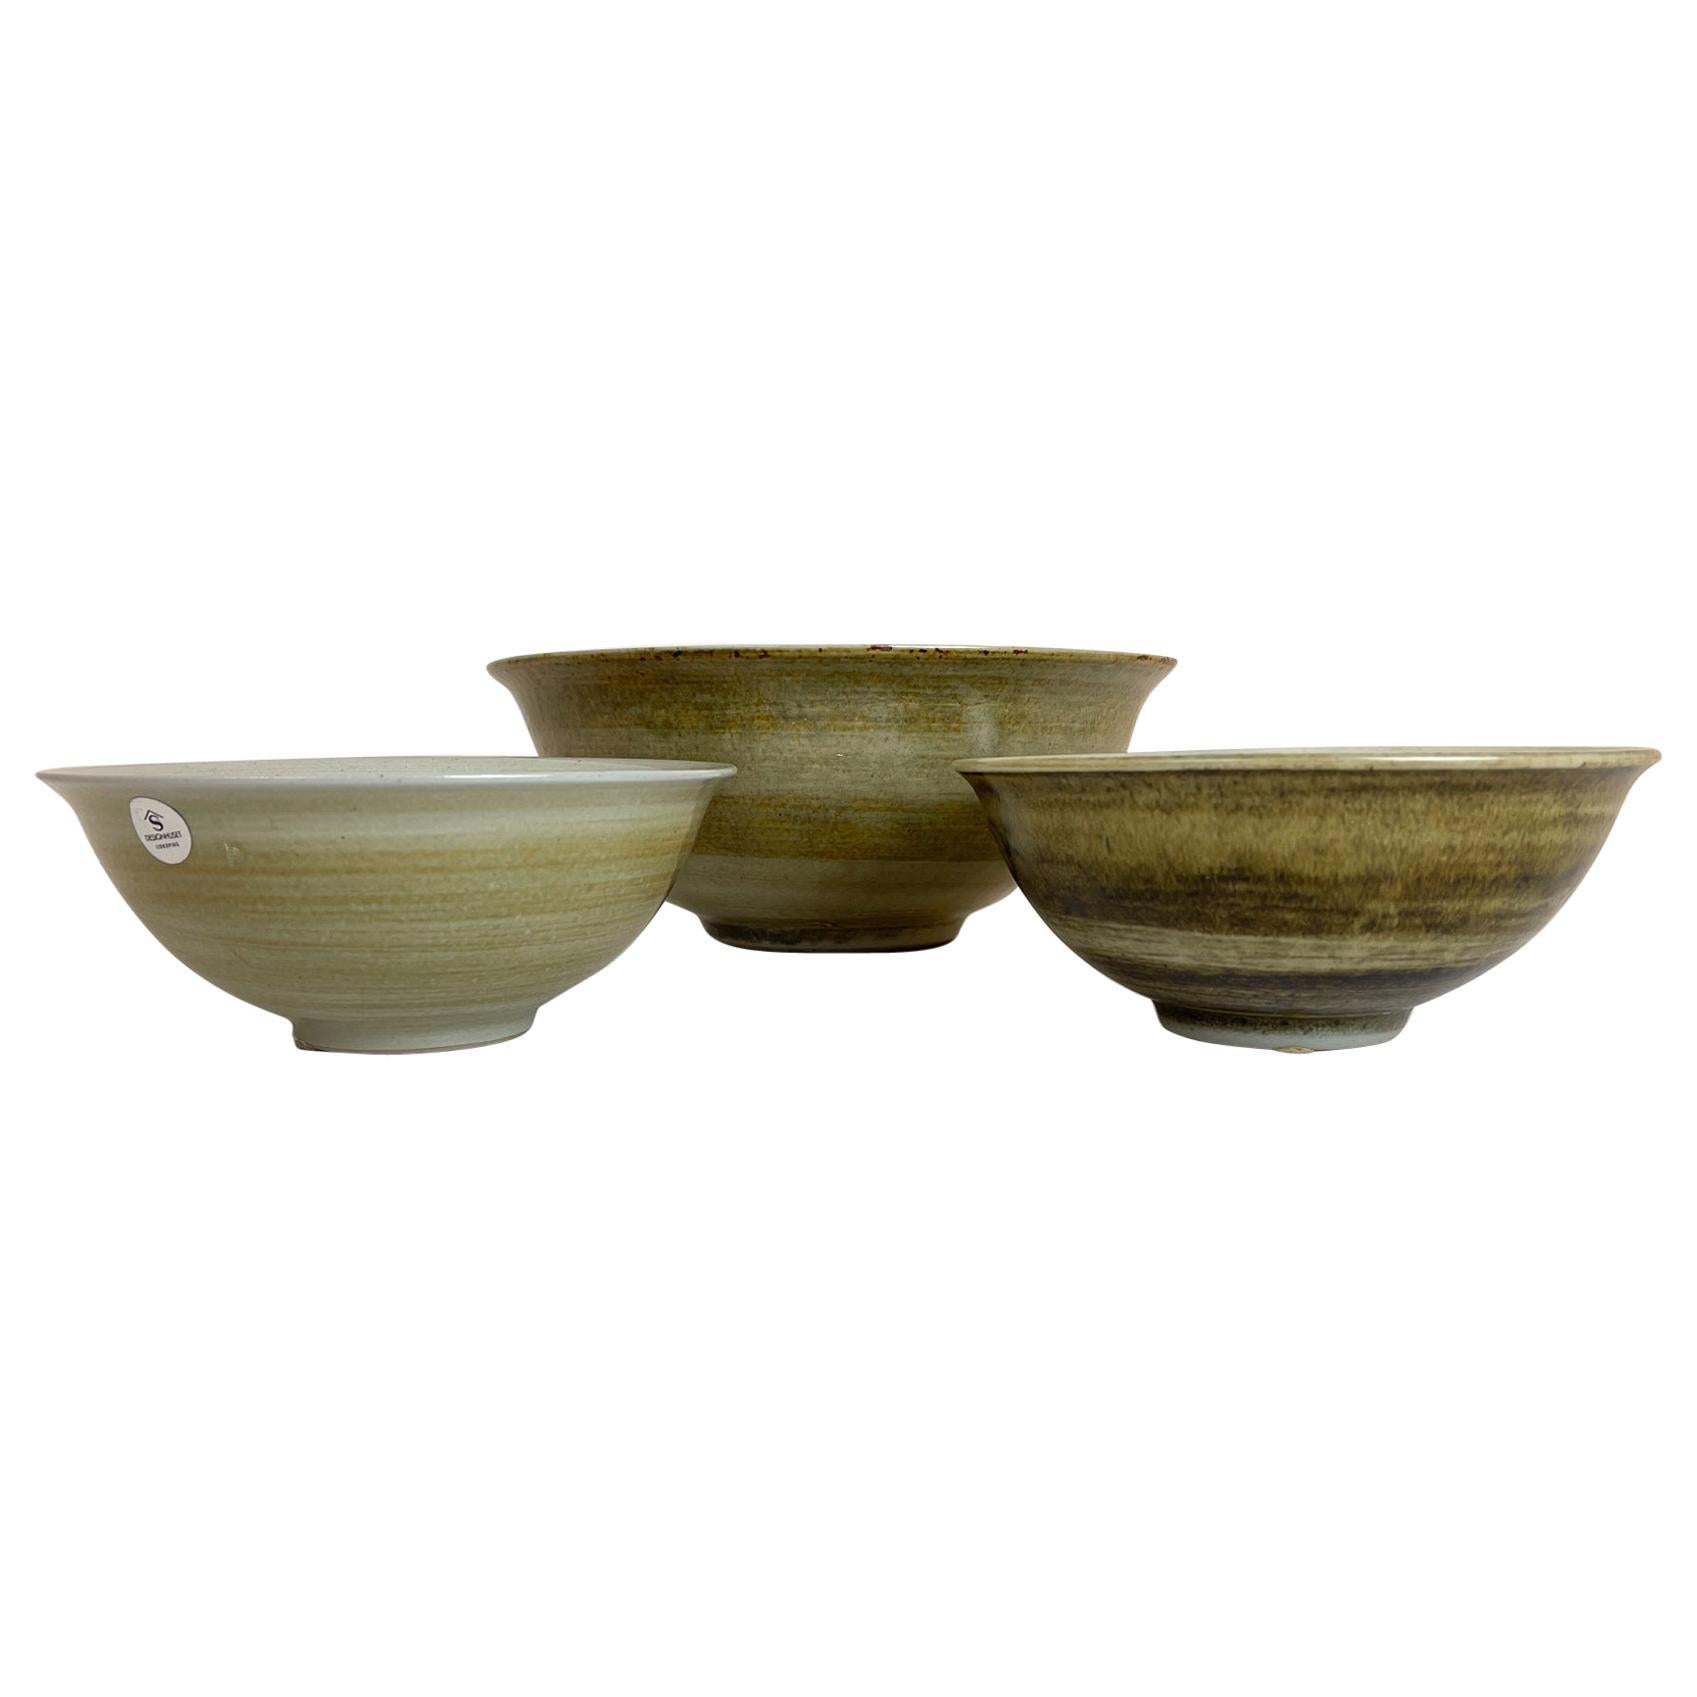 Scandinavian Modern Ceramic Bowls by Carl-Harry Stålhane Design Huset, Sweden For Sale